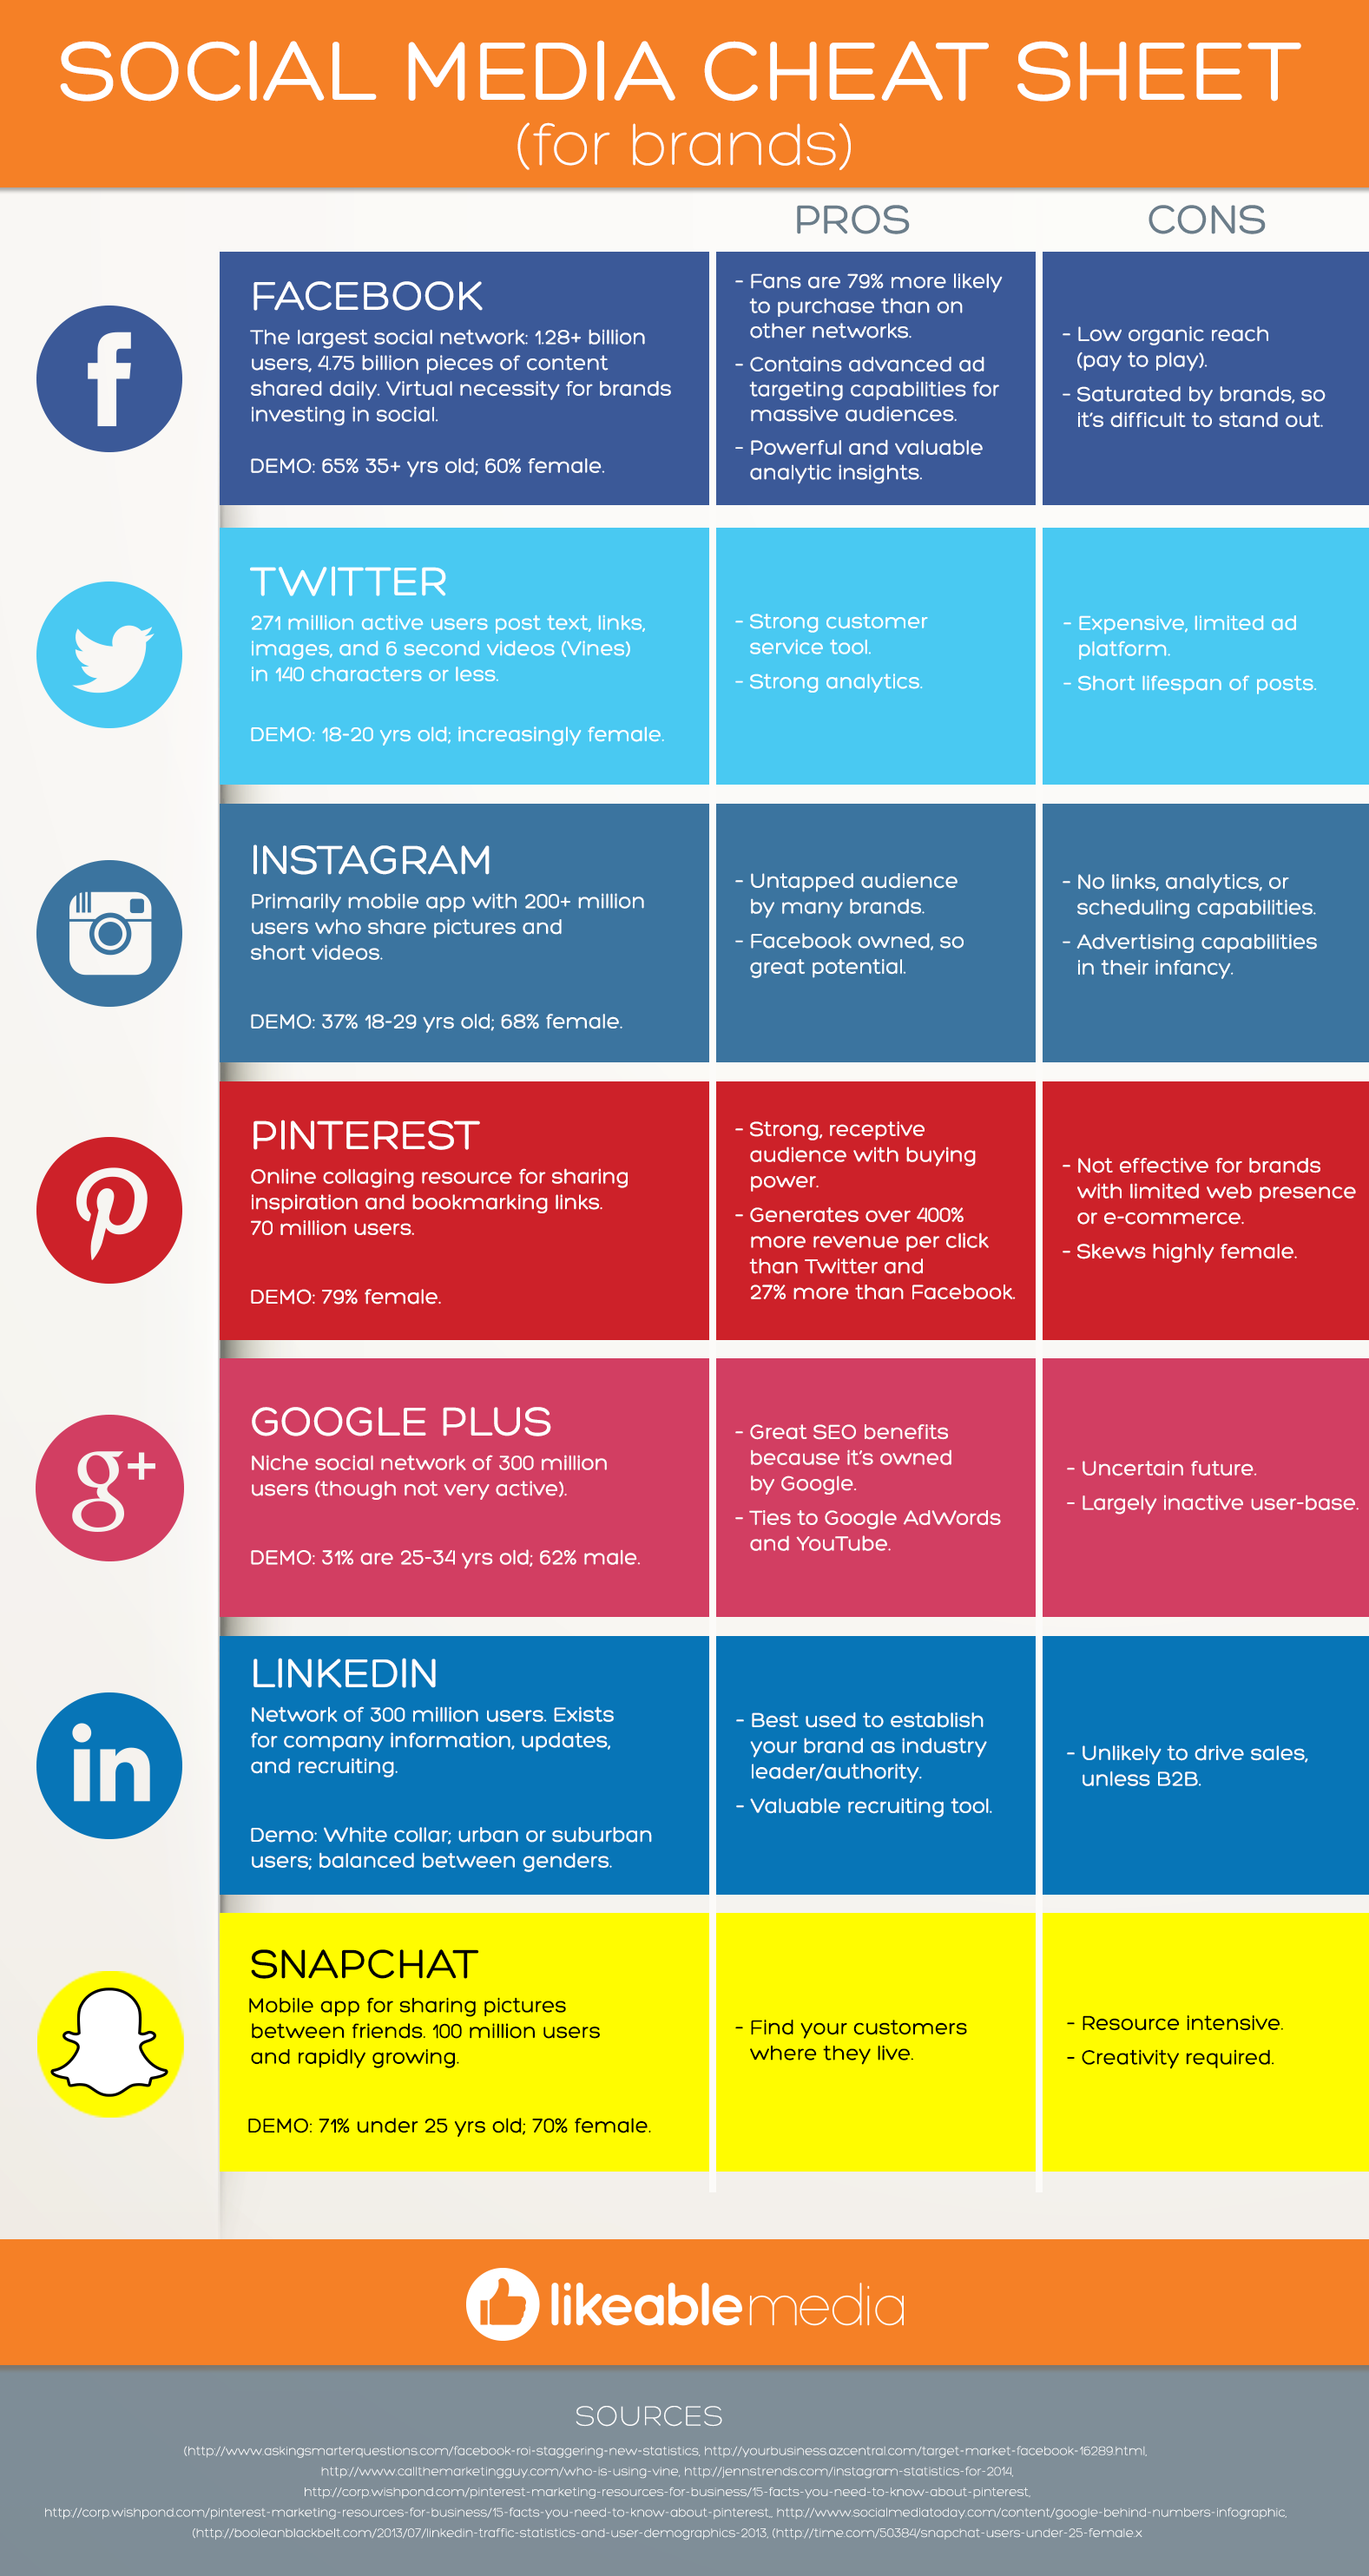 Infographic met de specifieke kenmerken en voor- en nadelen van de grootste social media netwerken voor bedrijven